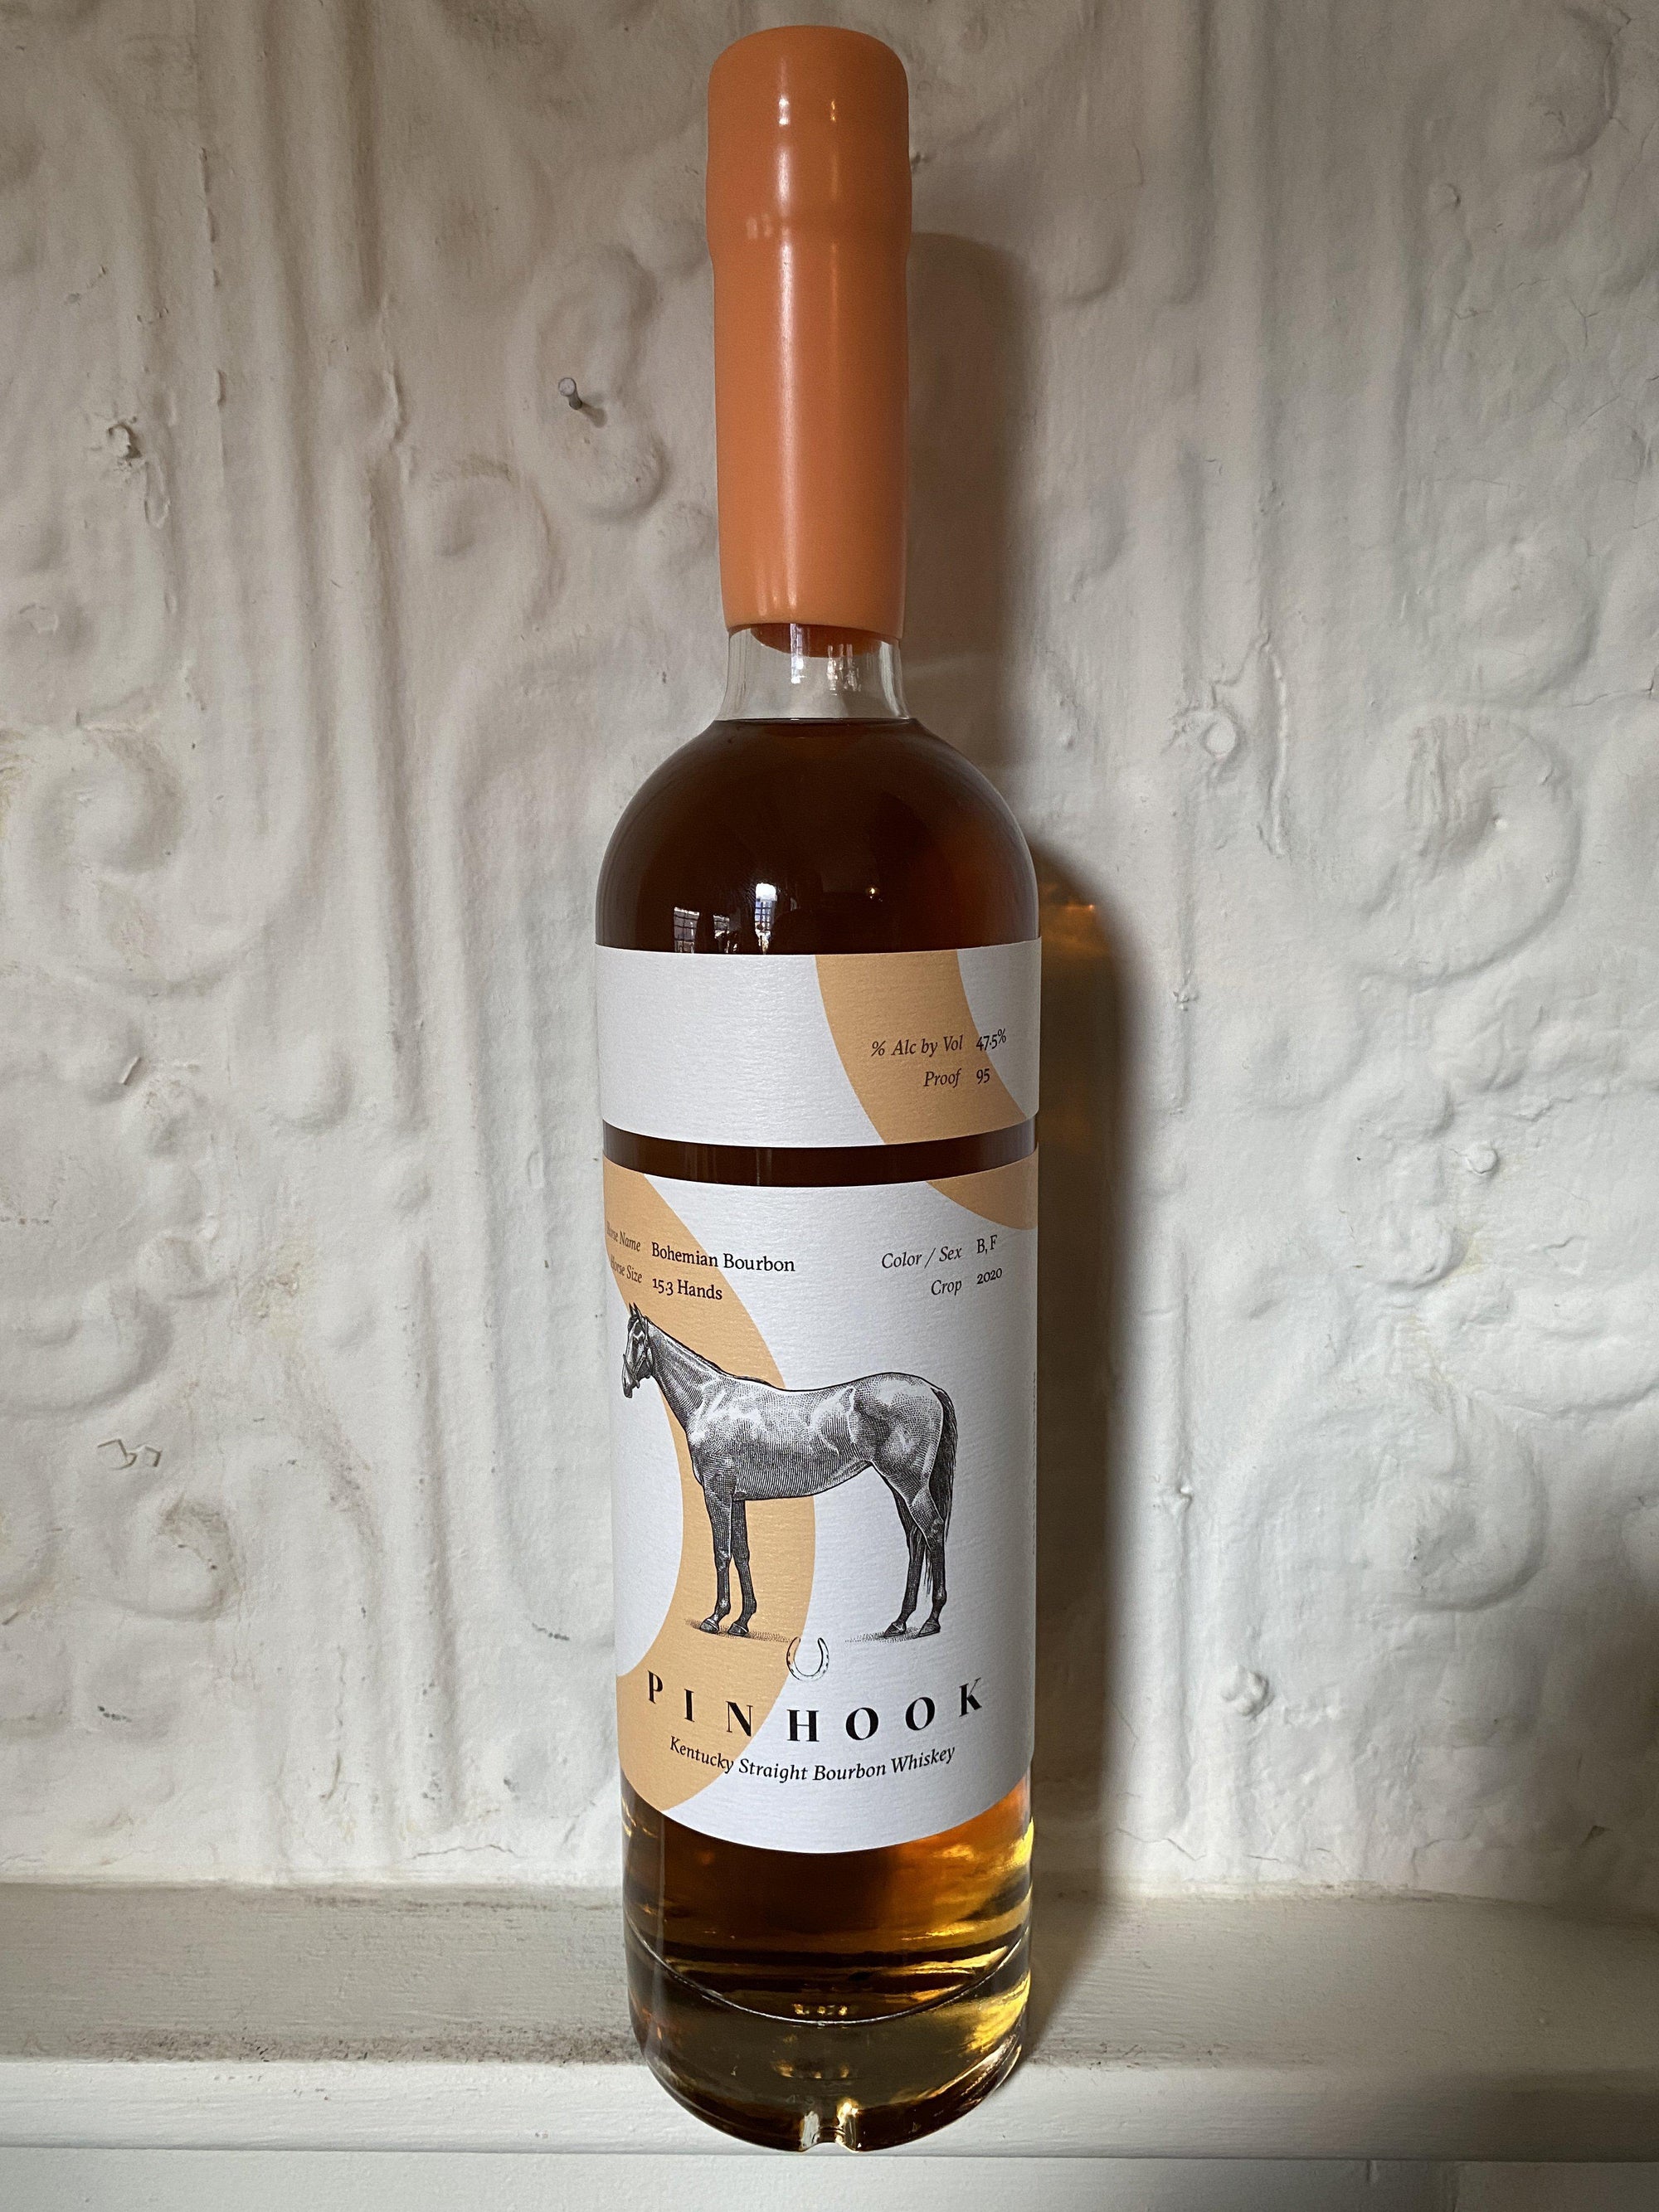 Pinhook "Bohemian Bourbon" Kentucky Straight Bourbon (Kentucky, United States)-Spirits-Bibber & Bell